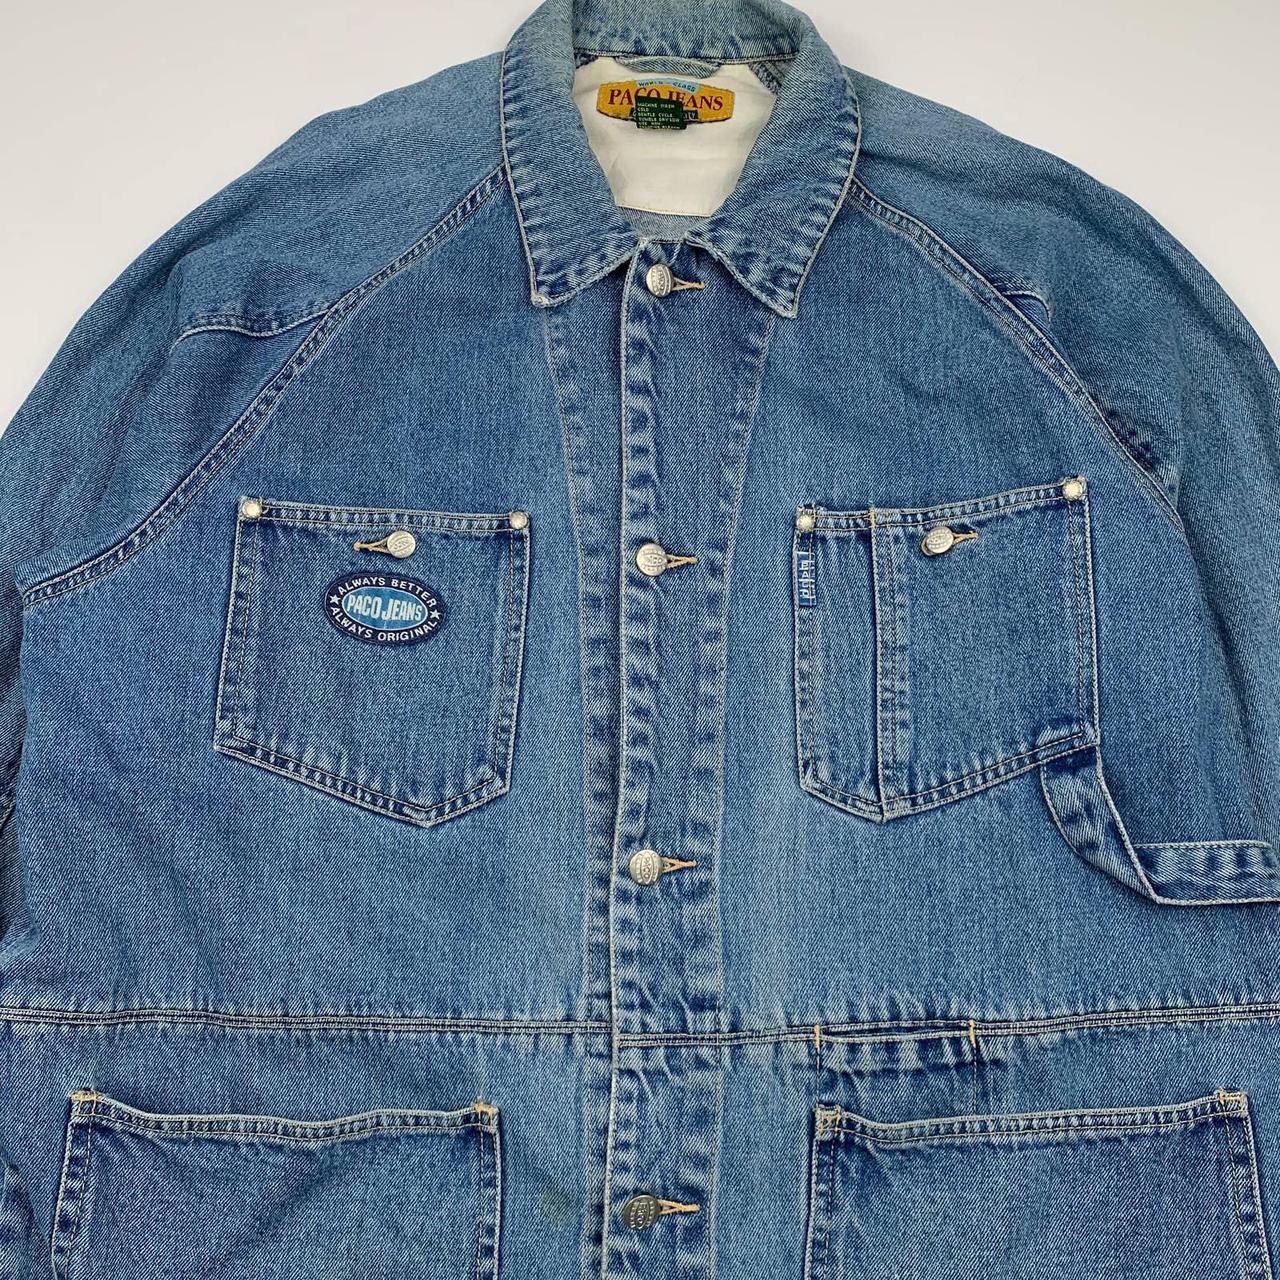 Vintage paco jeans denim button up chore coat... - Depop